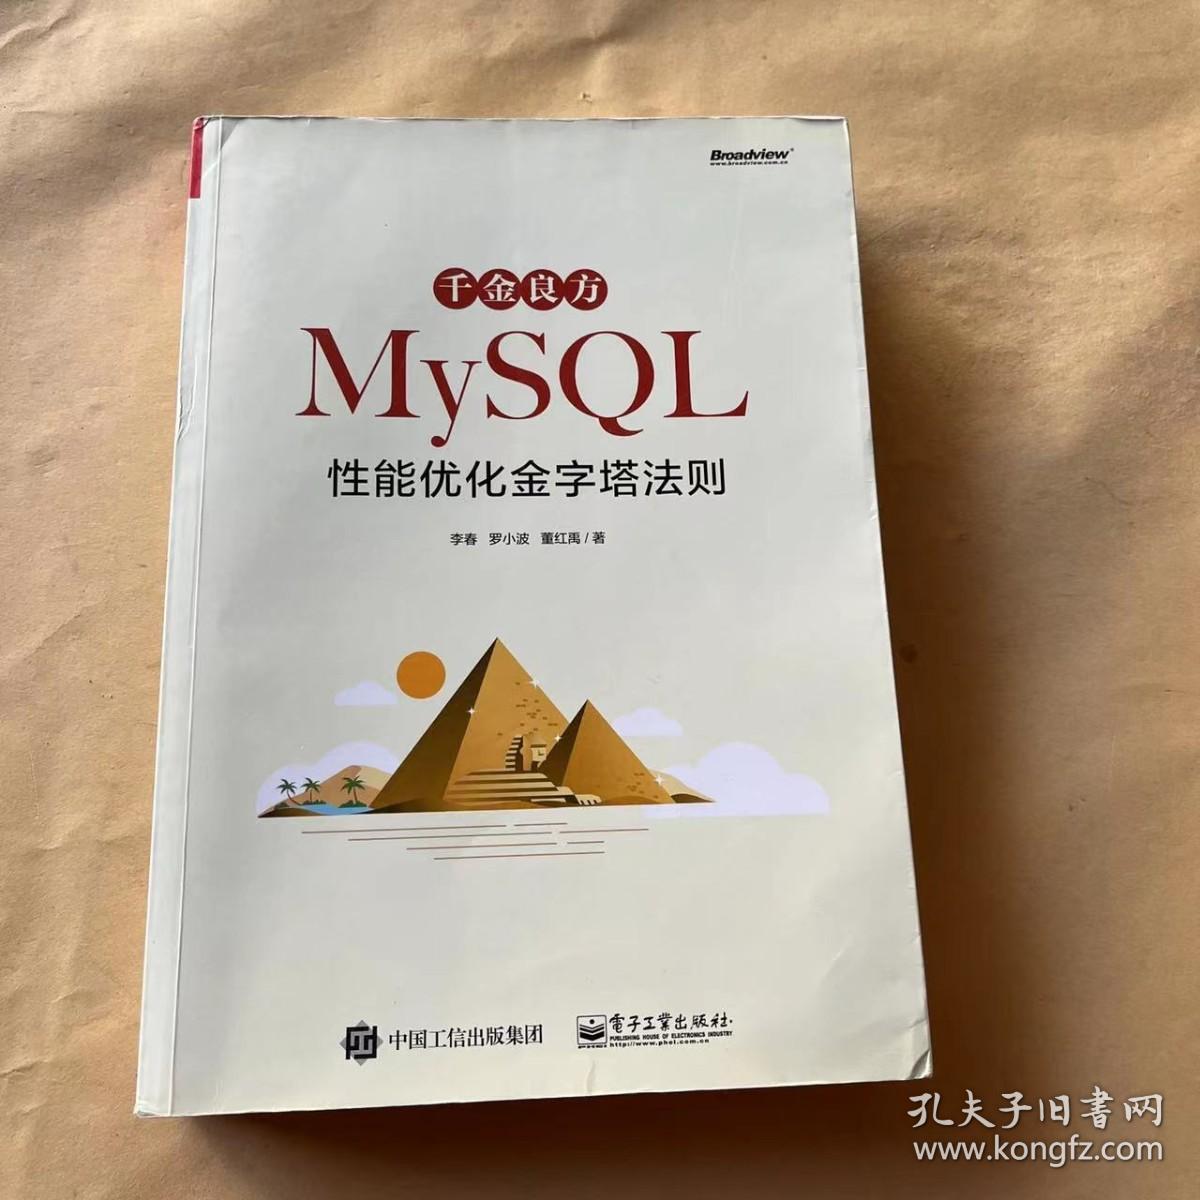 千金良方——MySQL性能优化金字塔法则 签名本